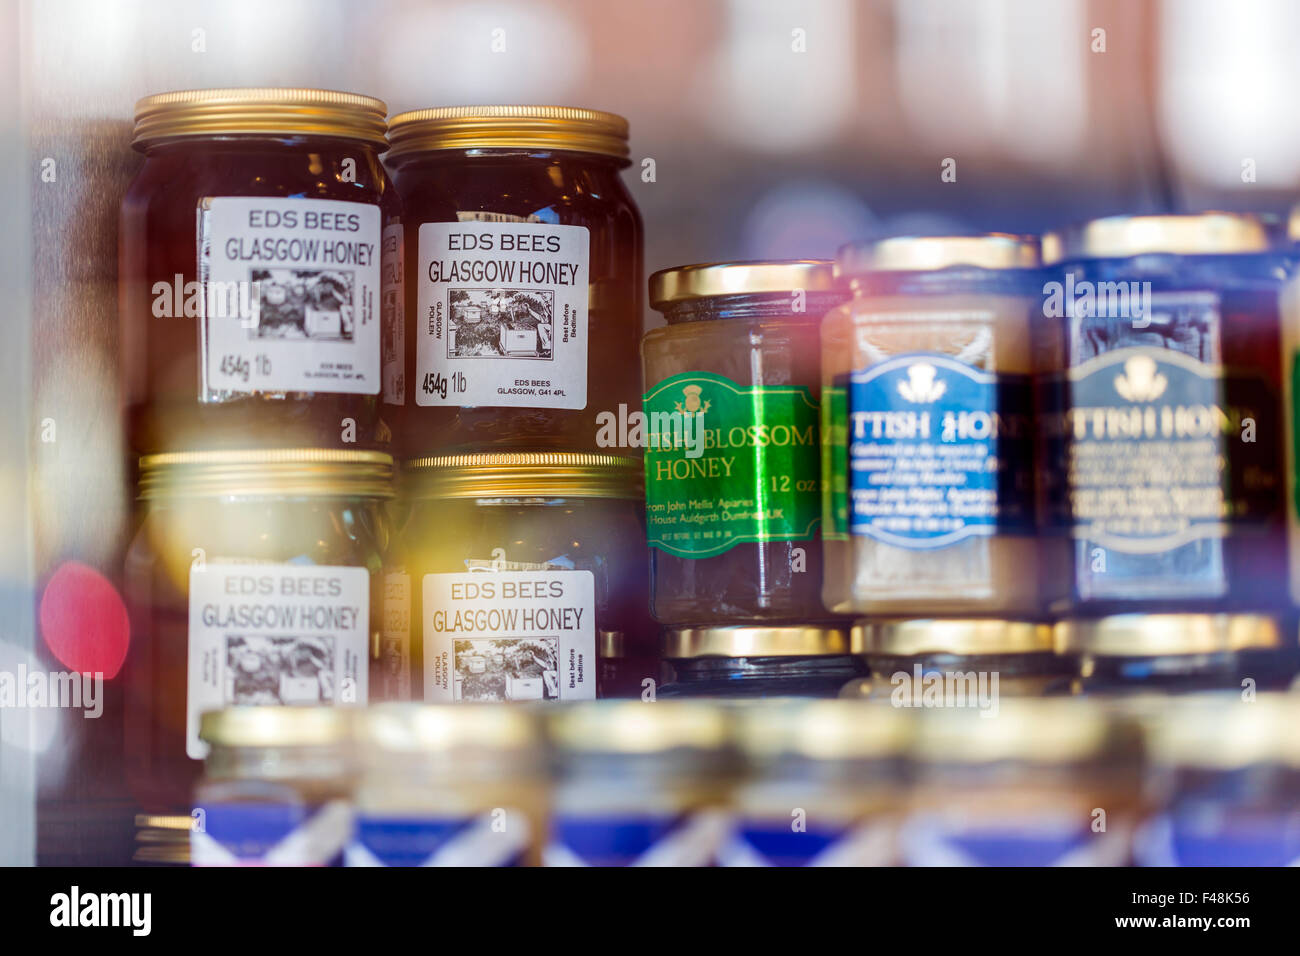 Gläser lokalen Honigs auf der Ausstellung in einem Schaufenster, Glasgow, Schottland, Großbritannien Stockfoto